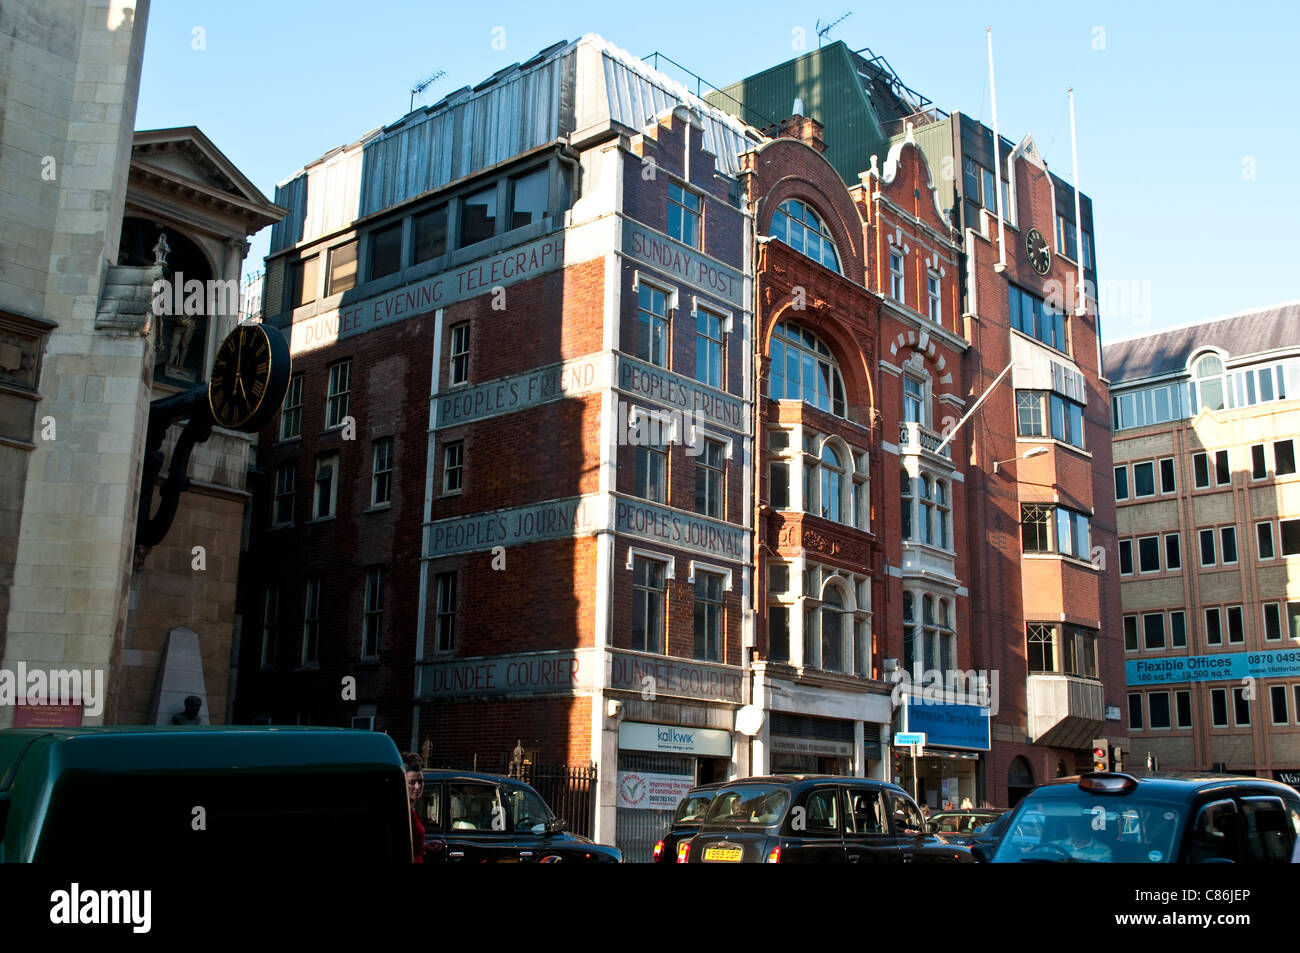 Les journaux s'appuyant sur le Strand, Fleet Street, London, United Kingdom Banque D'Images